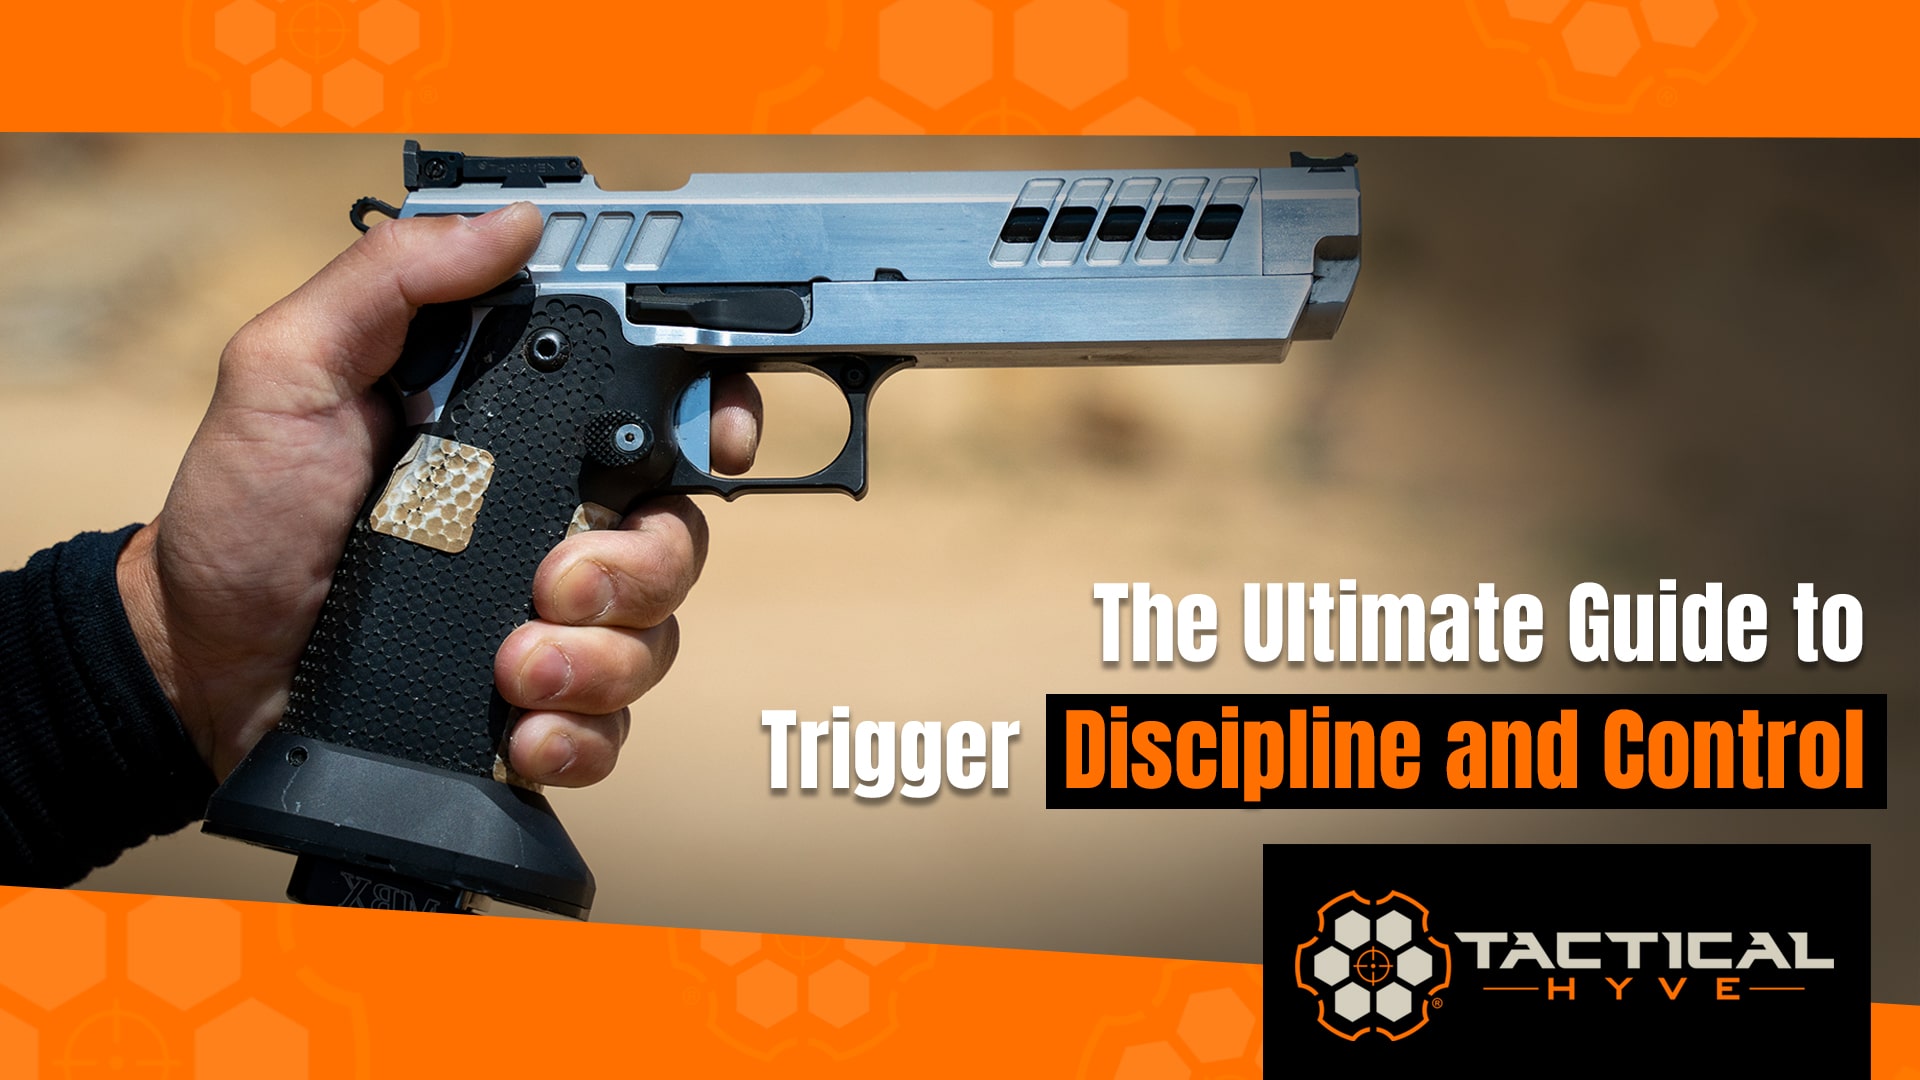 Does trigger discipline affect vats?